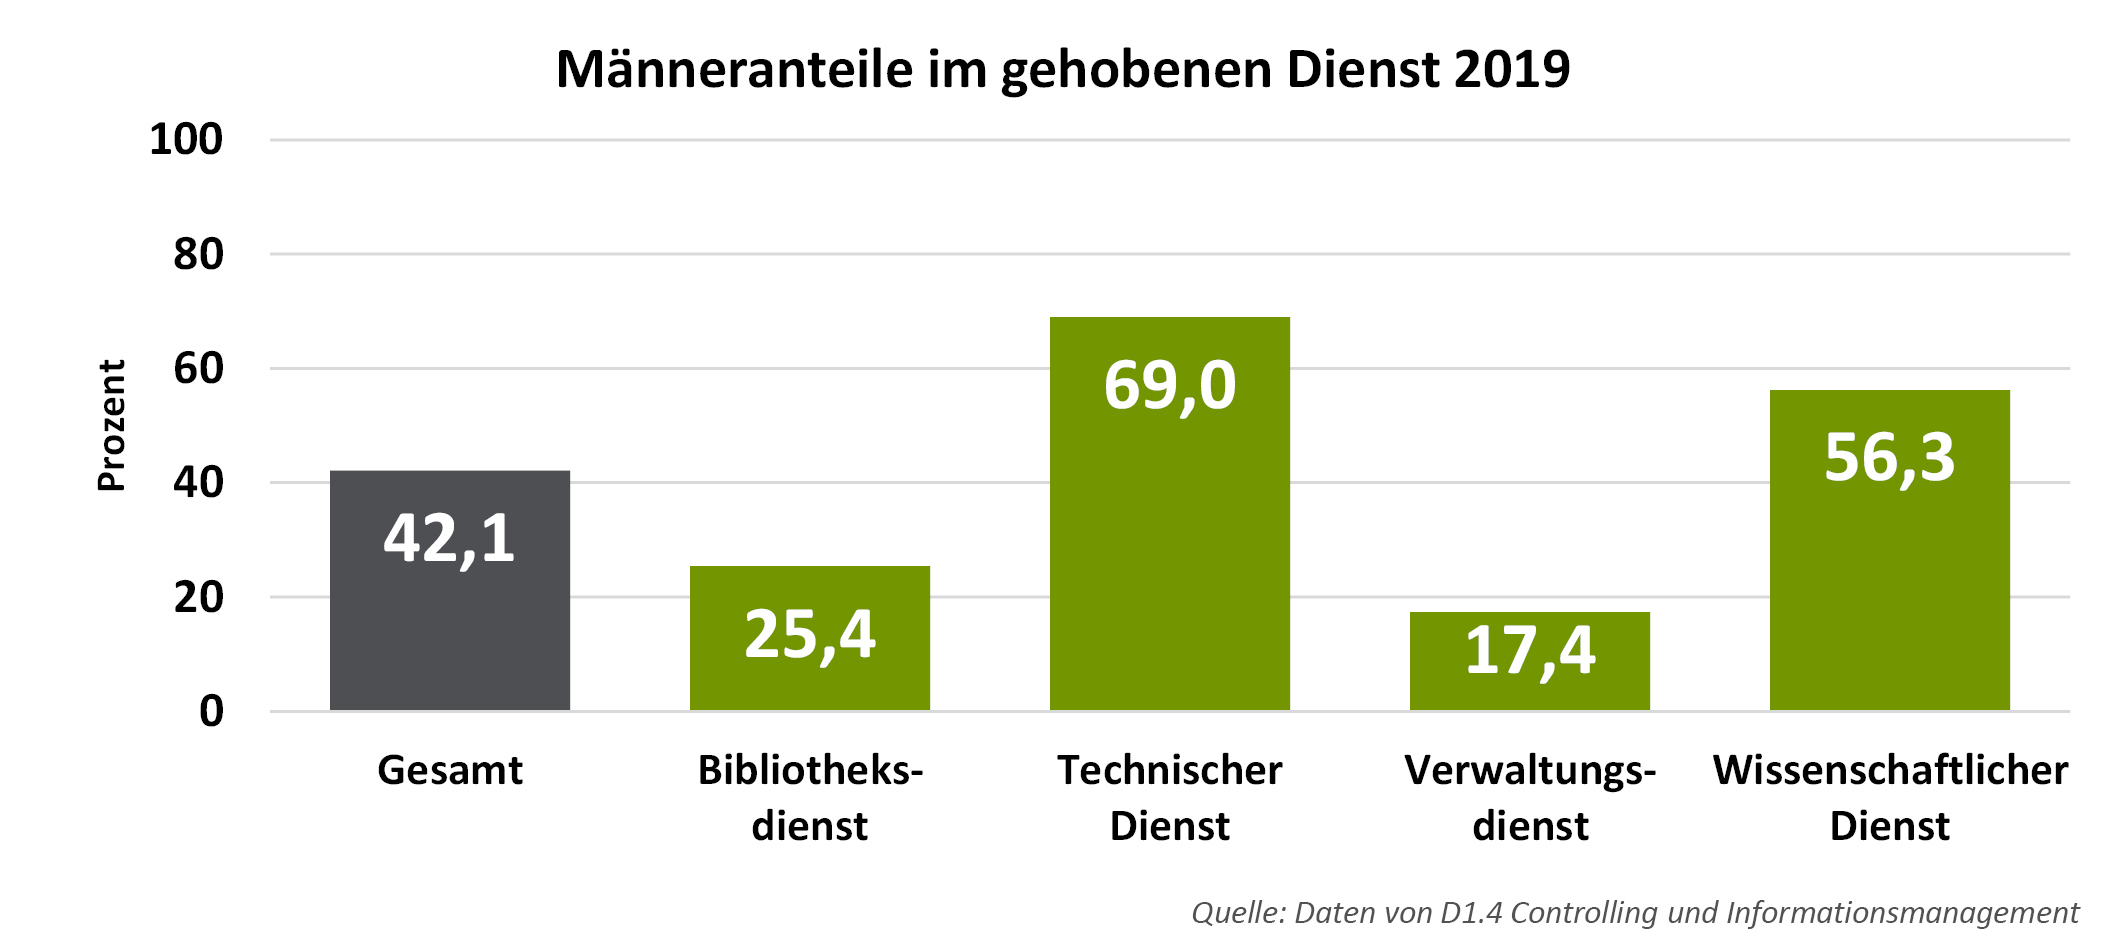 Männeranteile im gehobenen Dienst an der Universität Freiburg 2019. Gesamt: 42,1 %. Im Bibliotheksdienst: 25,4 %. Im technischen Dienst: 69,0 %. Im Verwaltungsdienst: 17,4 %. Im wissenschaftlichen Dienst: 56,3 %.